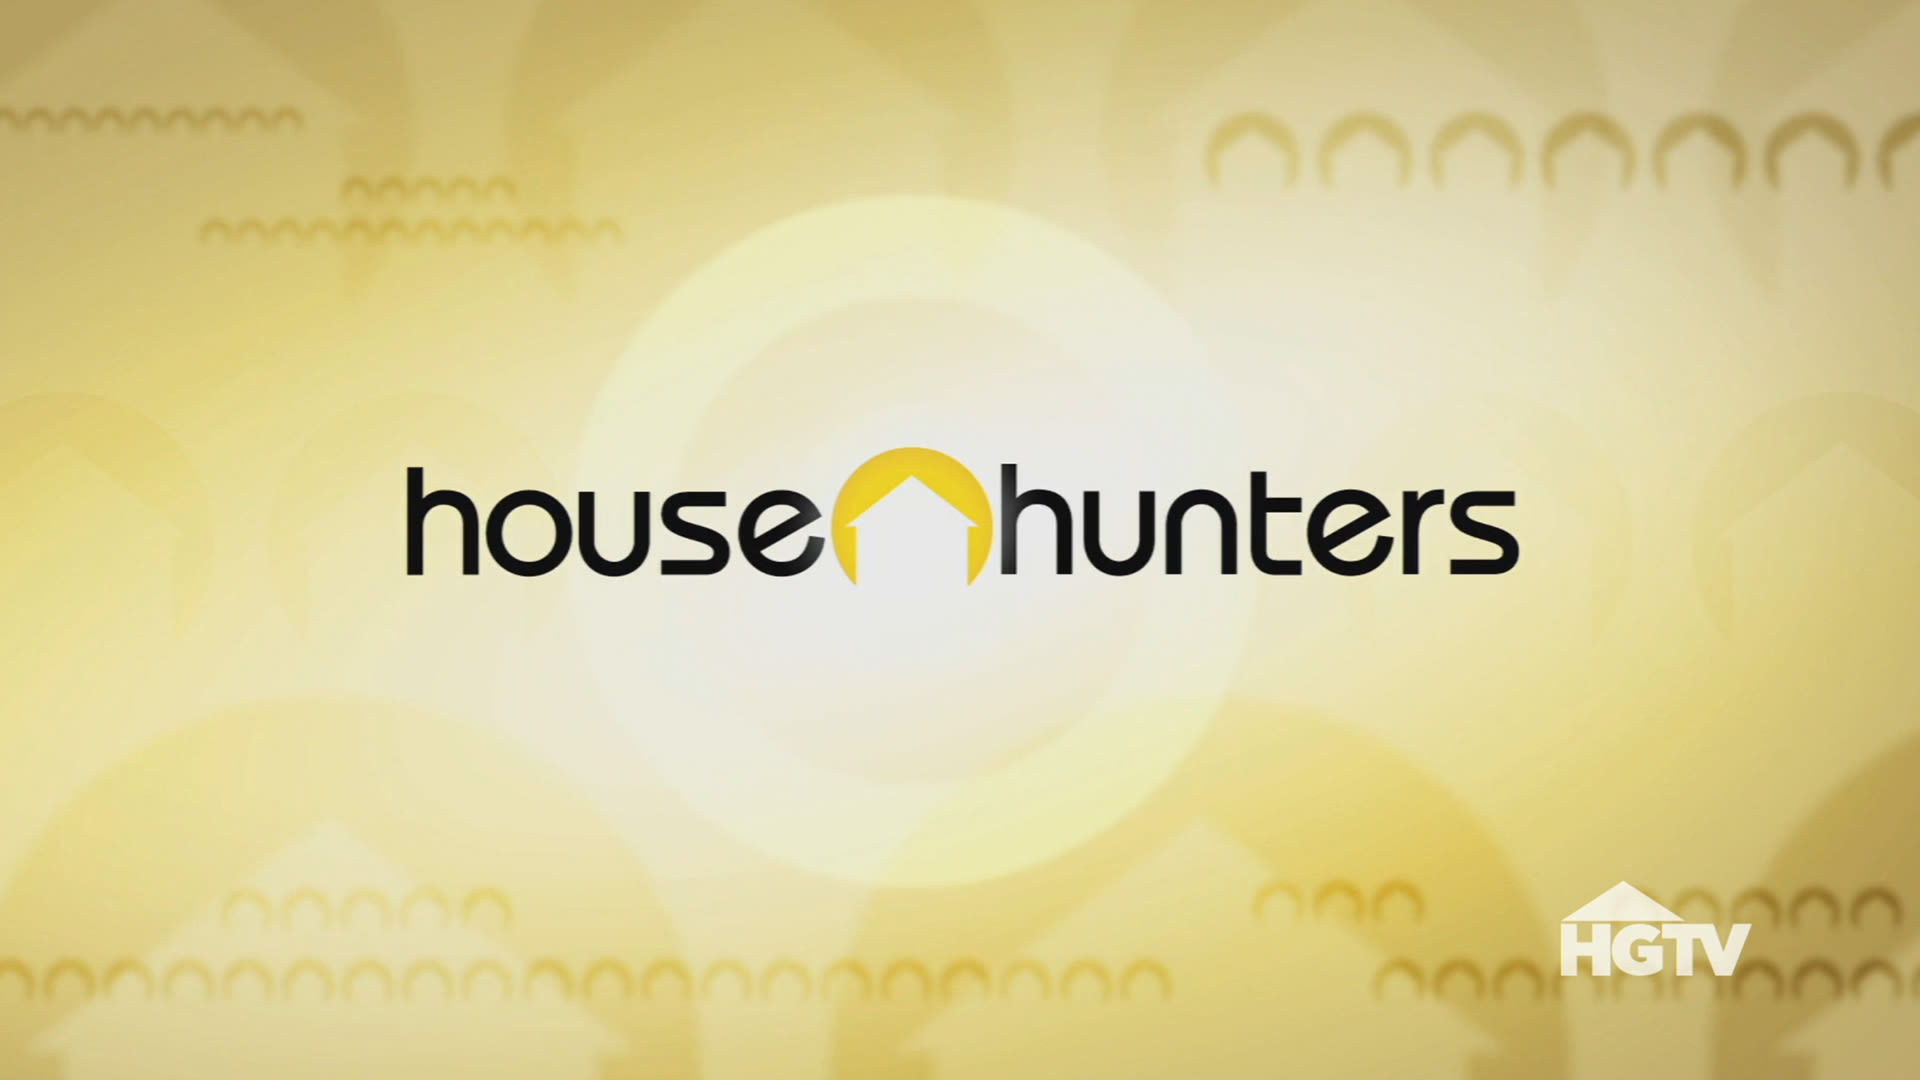 HGTV fans ‘cringe’ after spotting ‘disgusting’ behavior on House Hunters